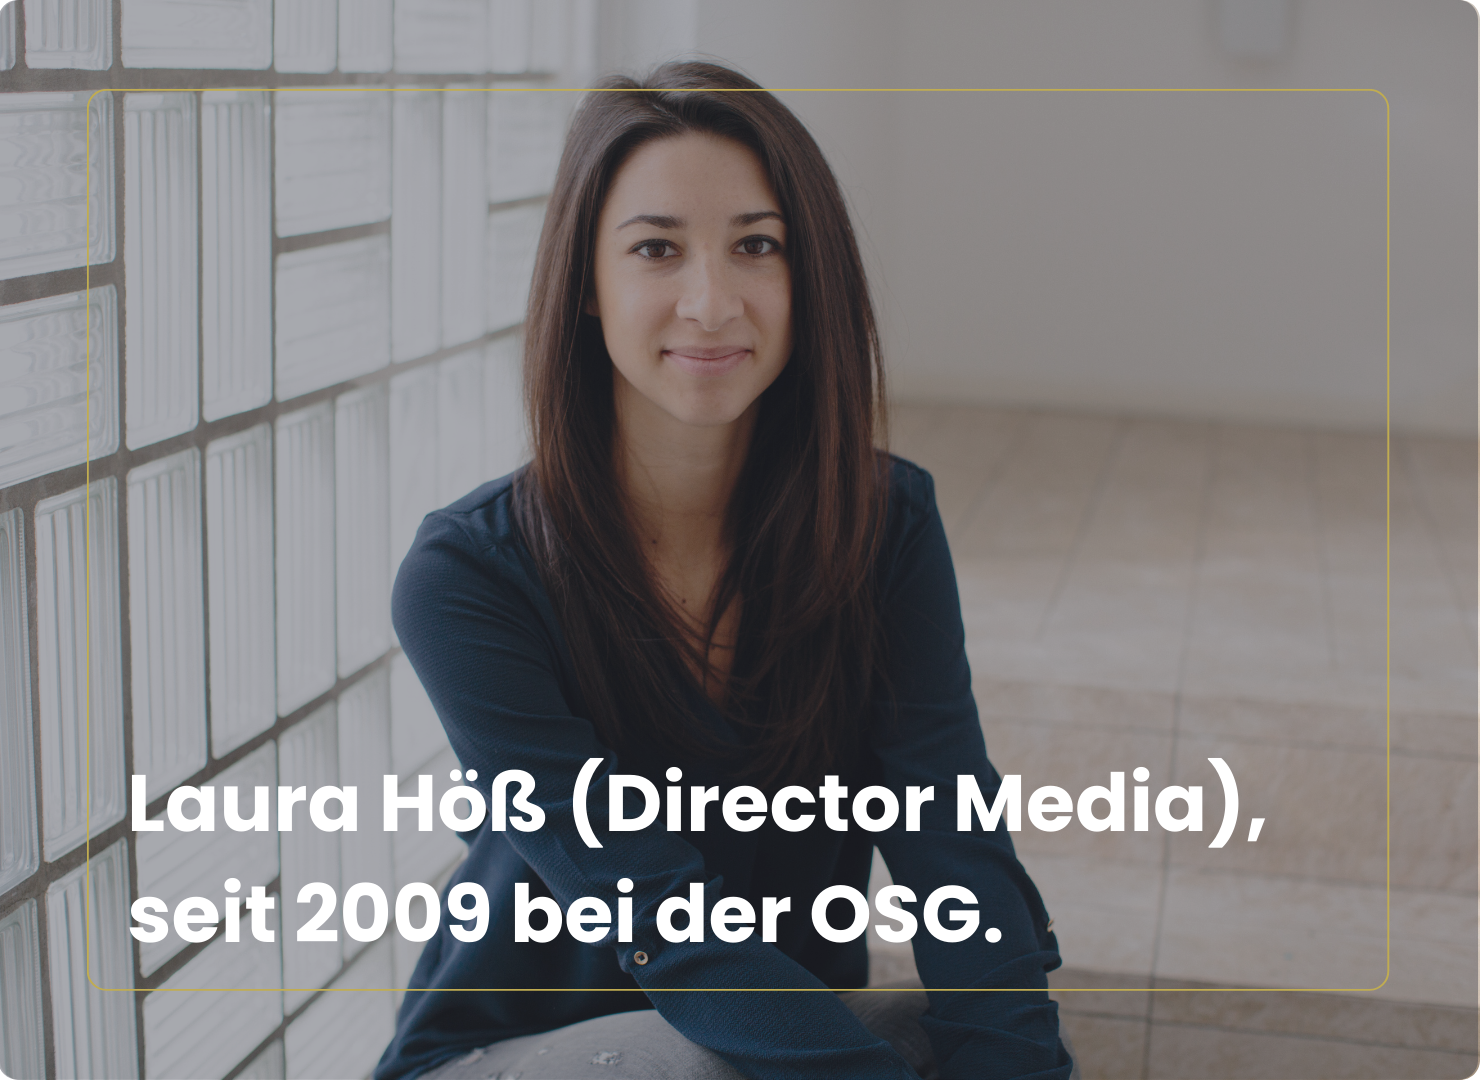 Laura Höß, Director Media